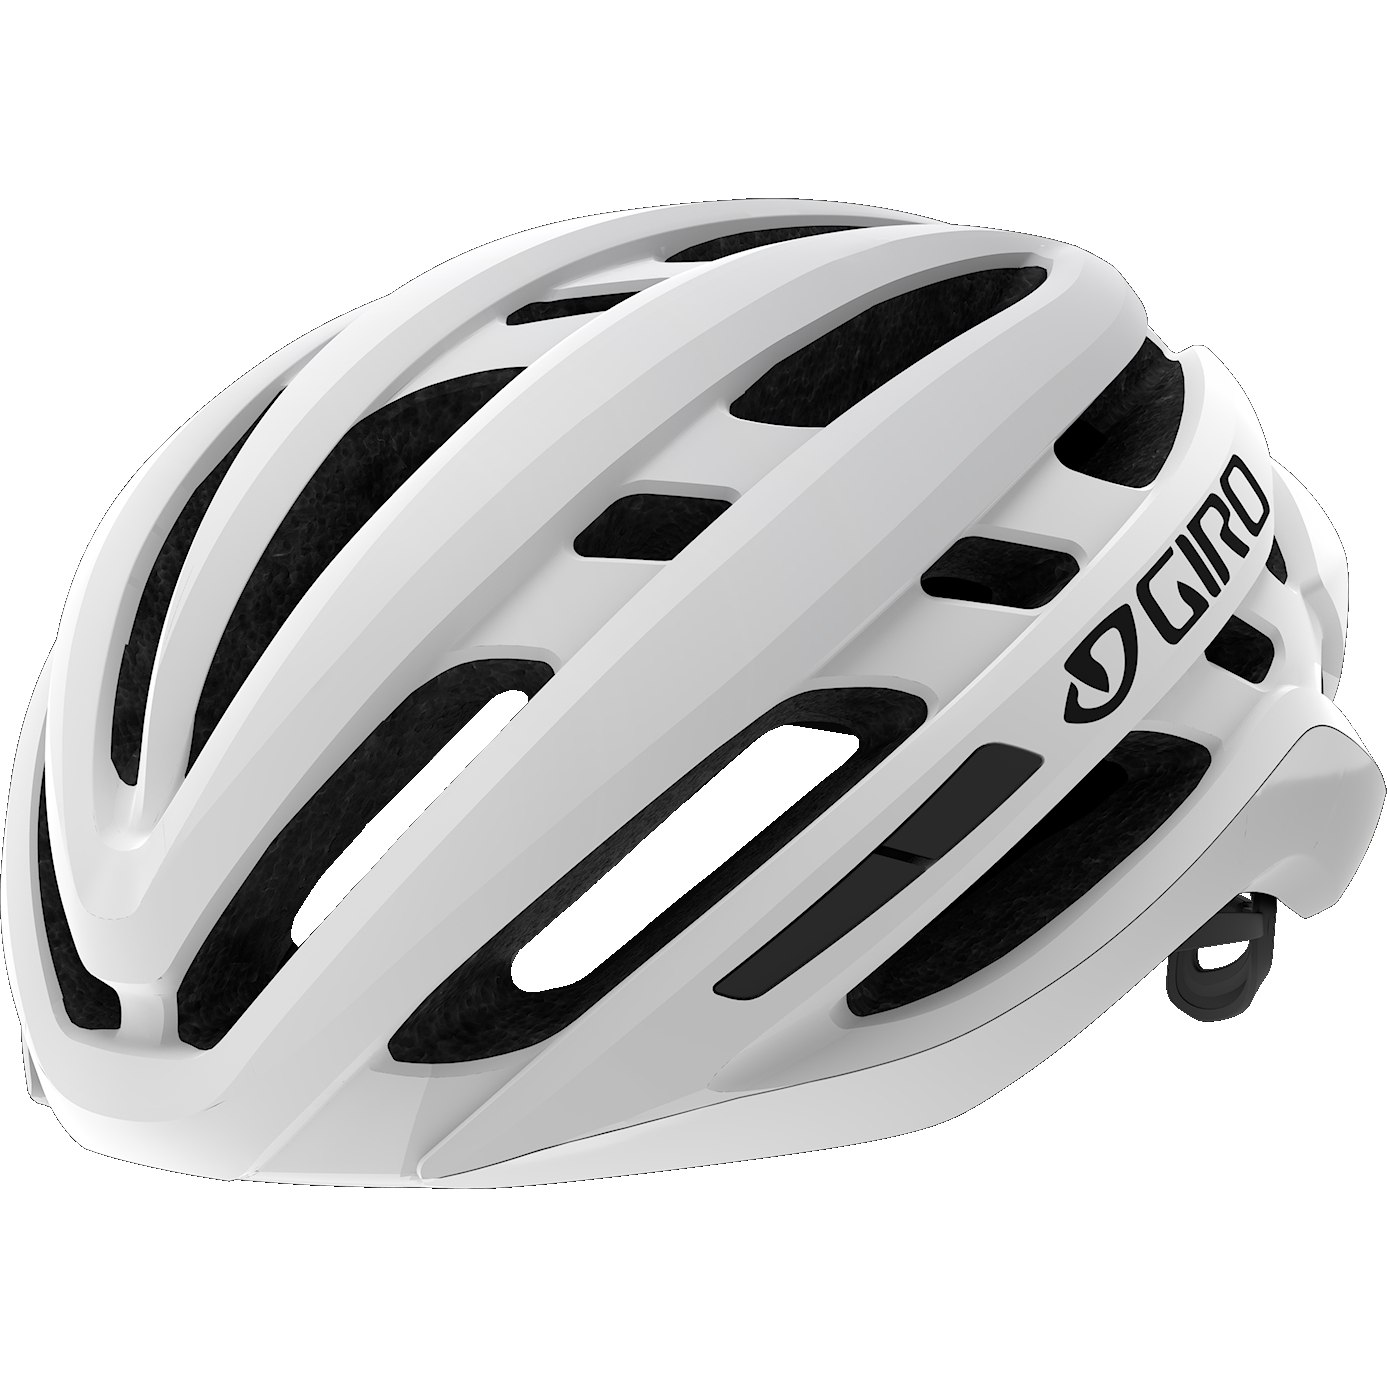 Produktbild von Giro Agilis MIPS Helm - matte white